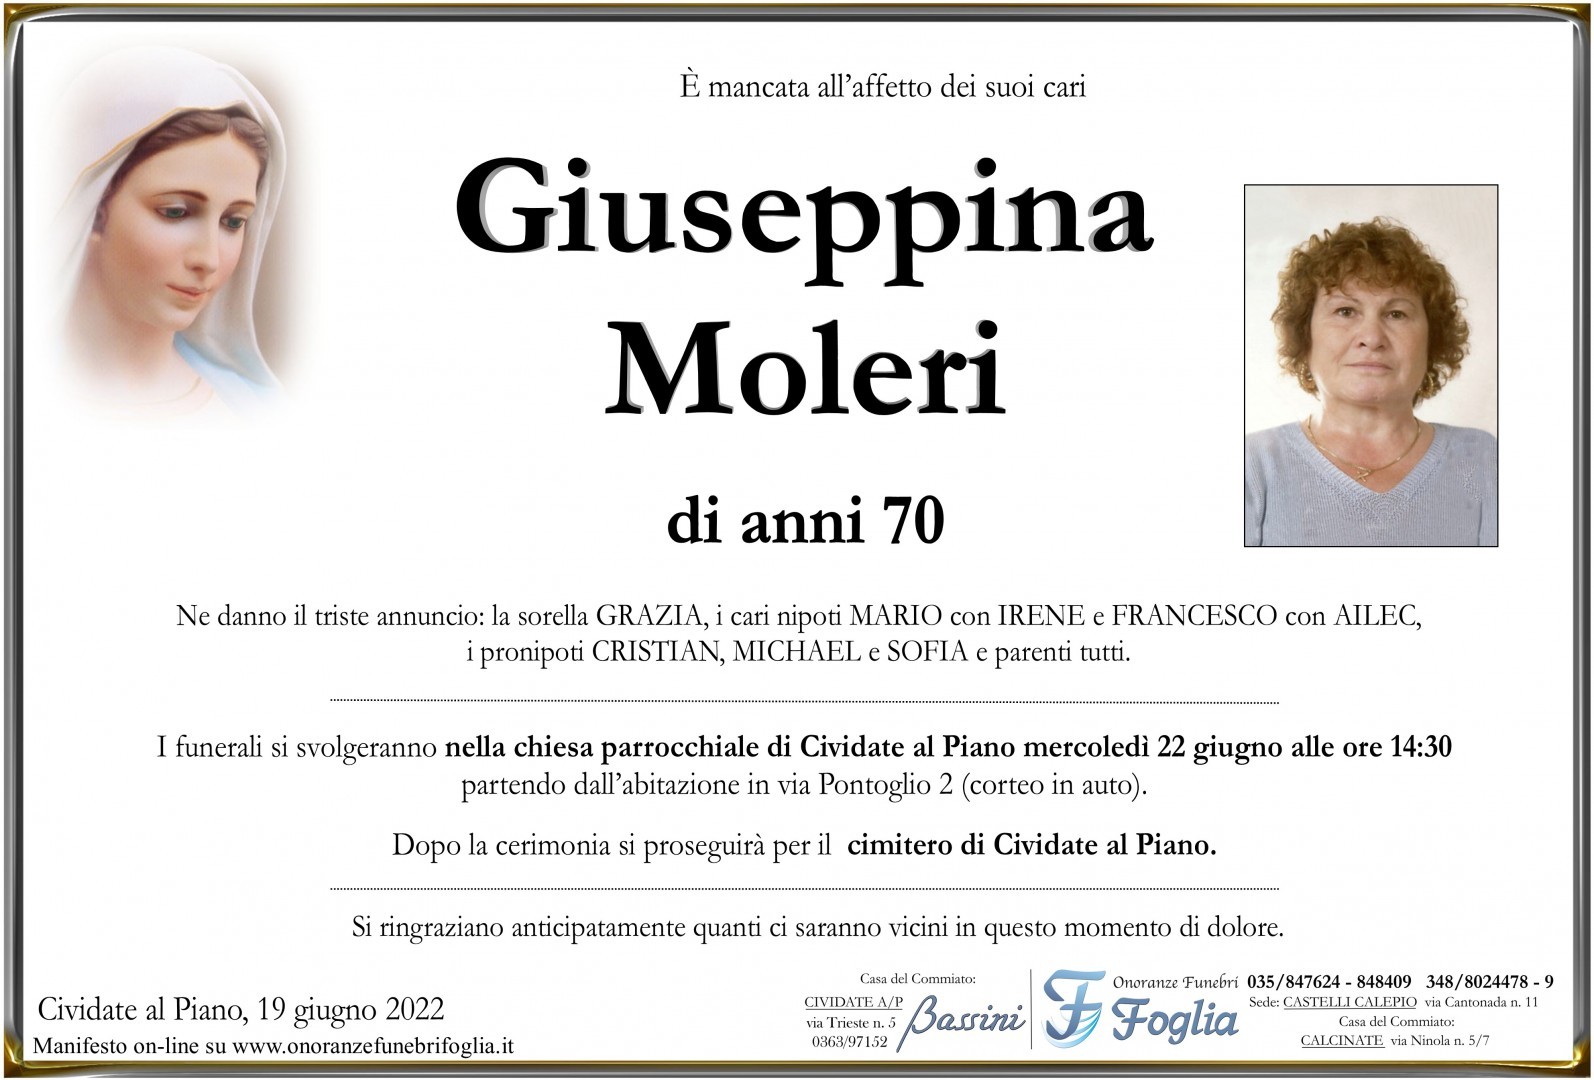 Giuseppina Moleri